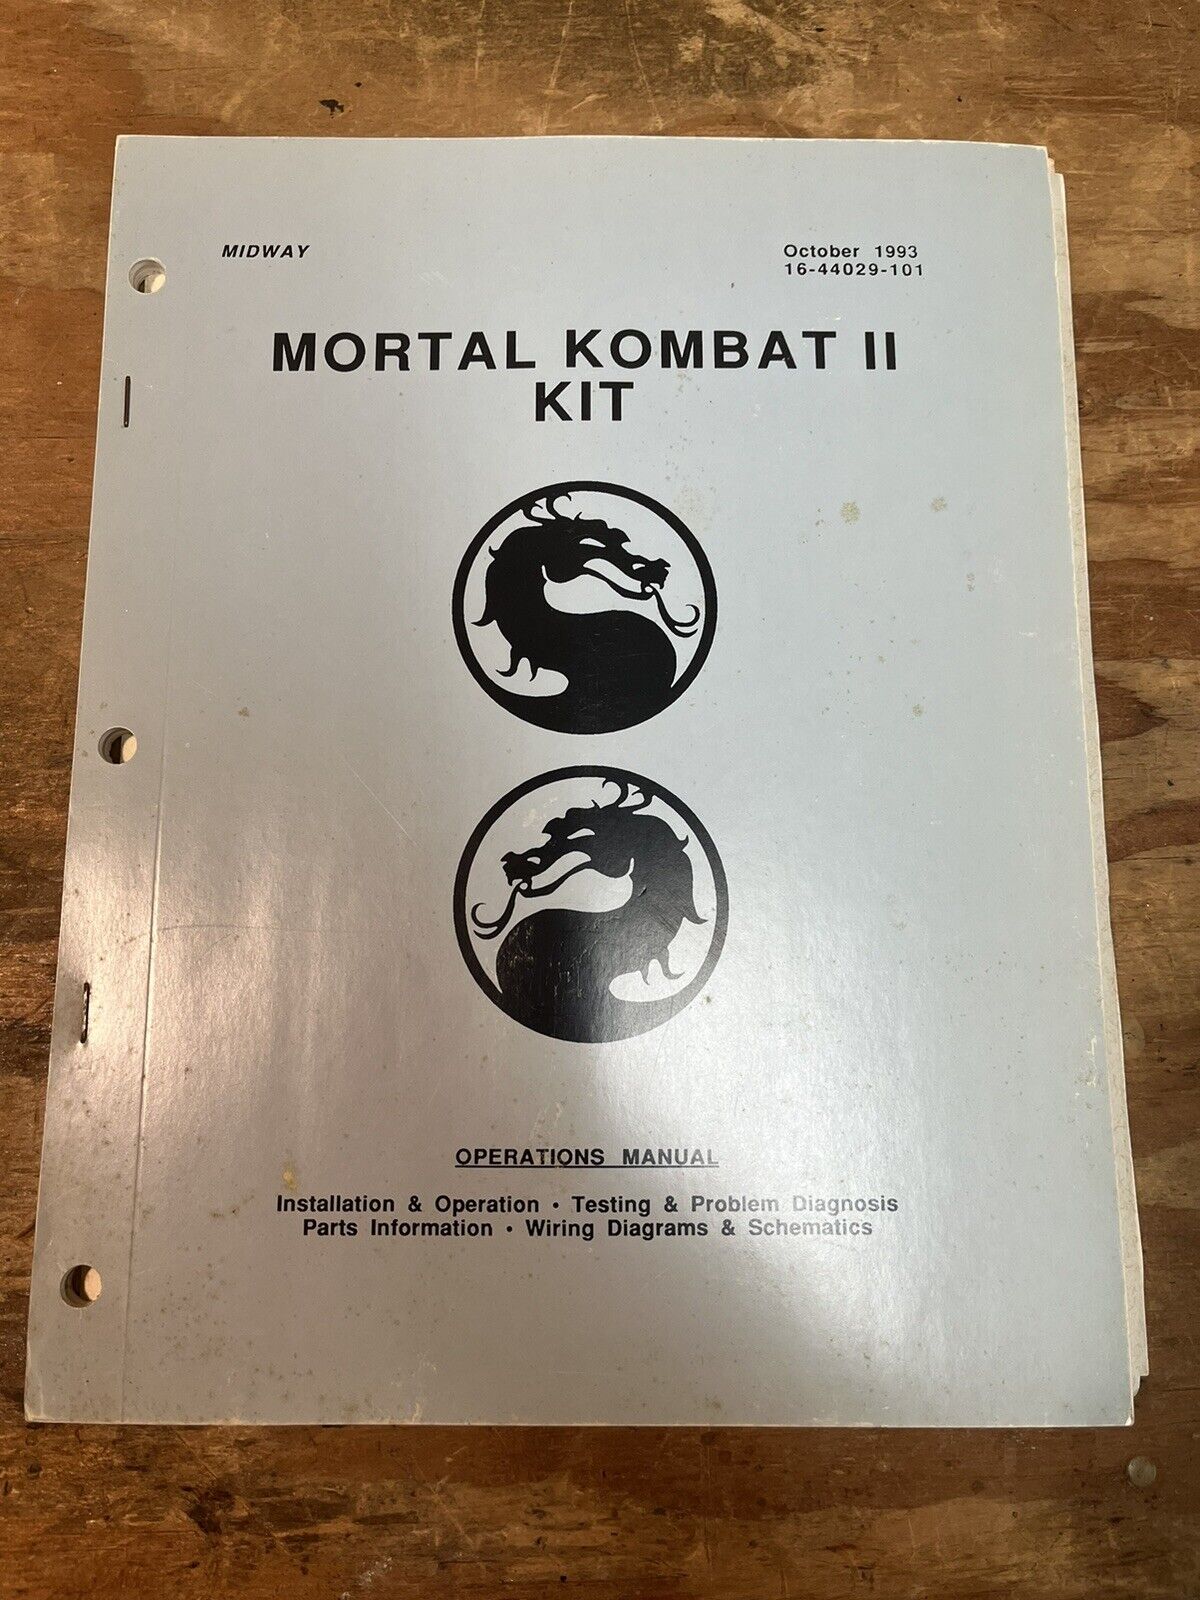 Vintage Midway Mortal Kombat II manual